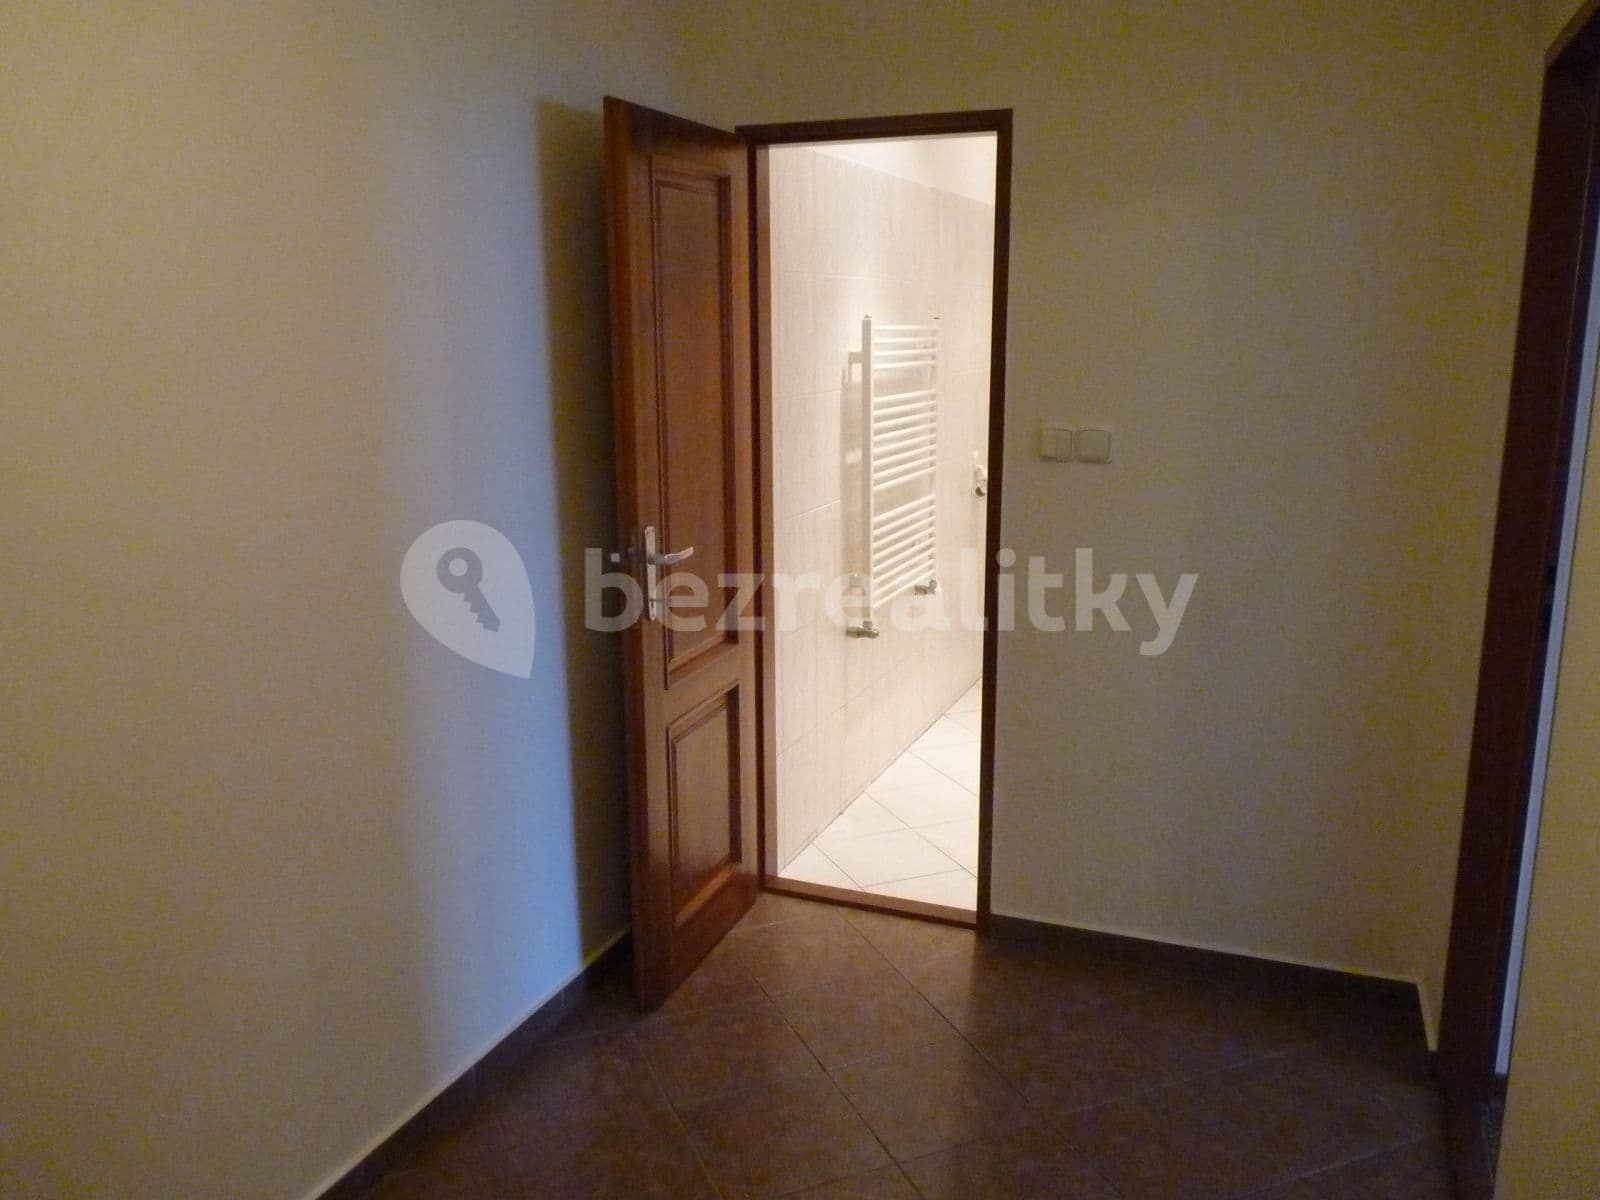 1 bedroom flat to rent, 45 m², Záběhlická, Prague, Prague